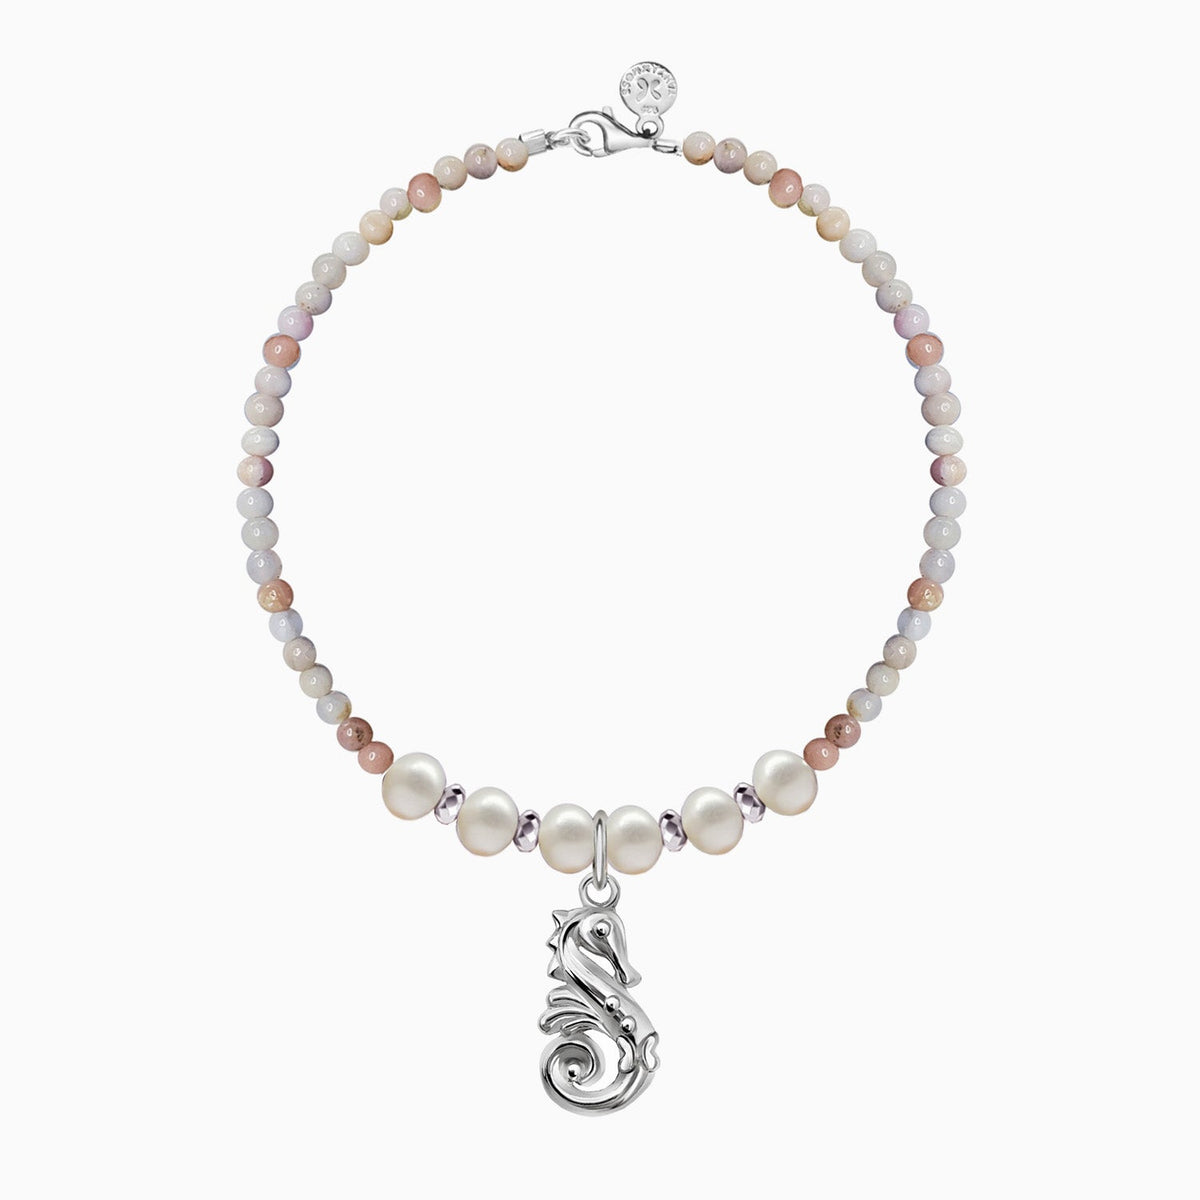 Bracelet 925 Silver Women Arrecife Sea Horse Opalo Pink / Pearls